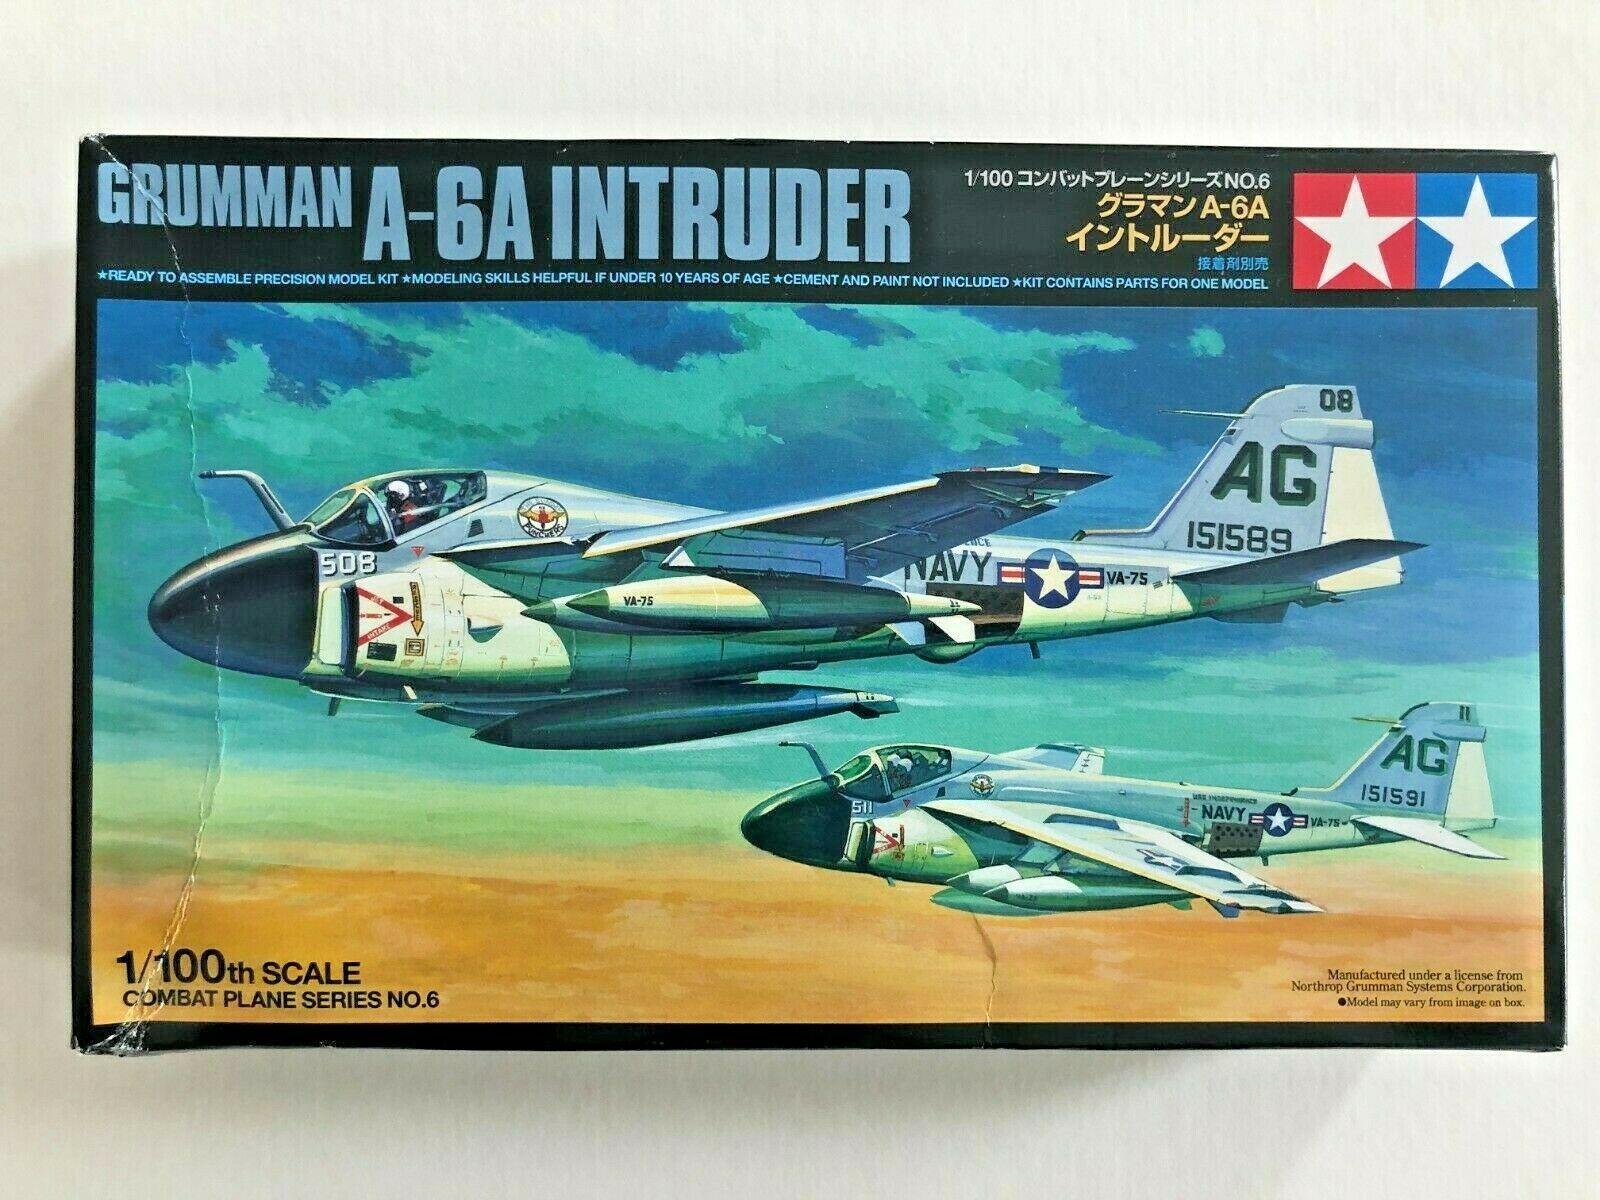 Grumman A-6 Intruder Wallpapers